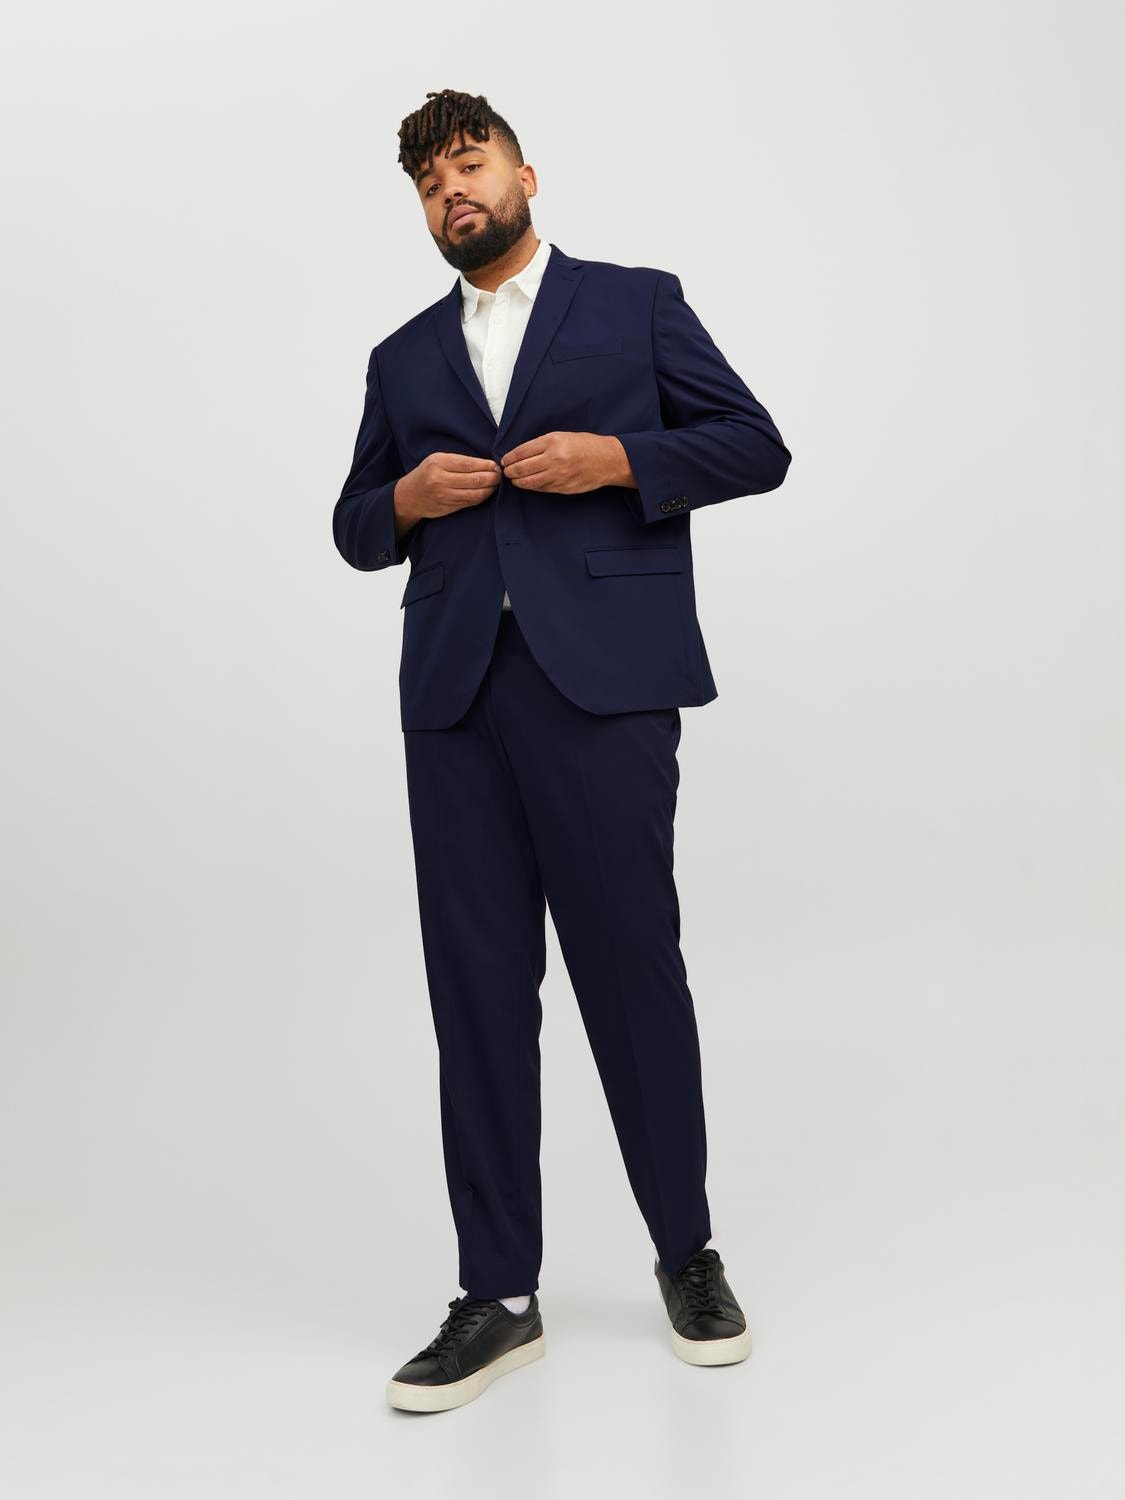 Jack & Jones Plus Size Slim Fit Suit -Medieval Blue - 12195449